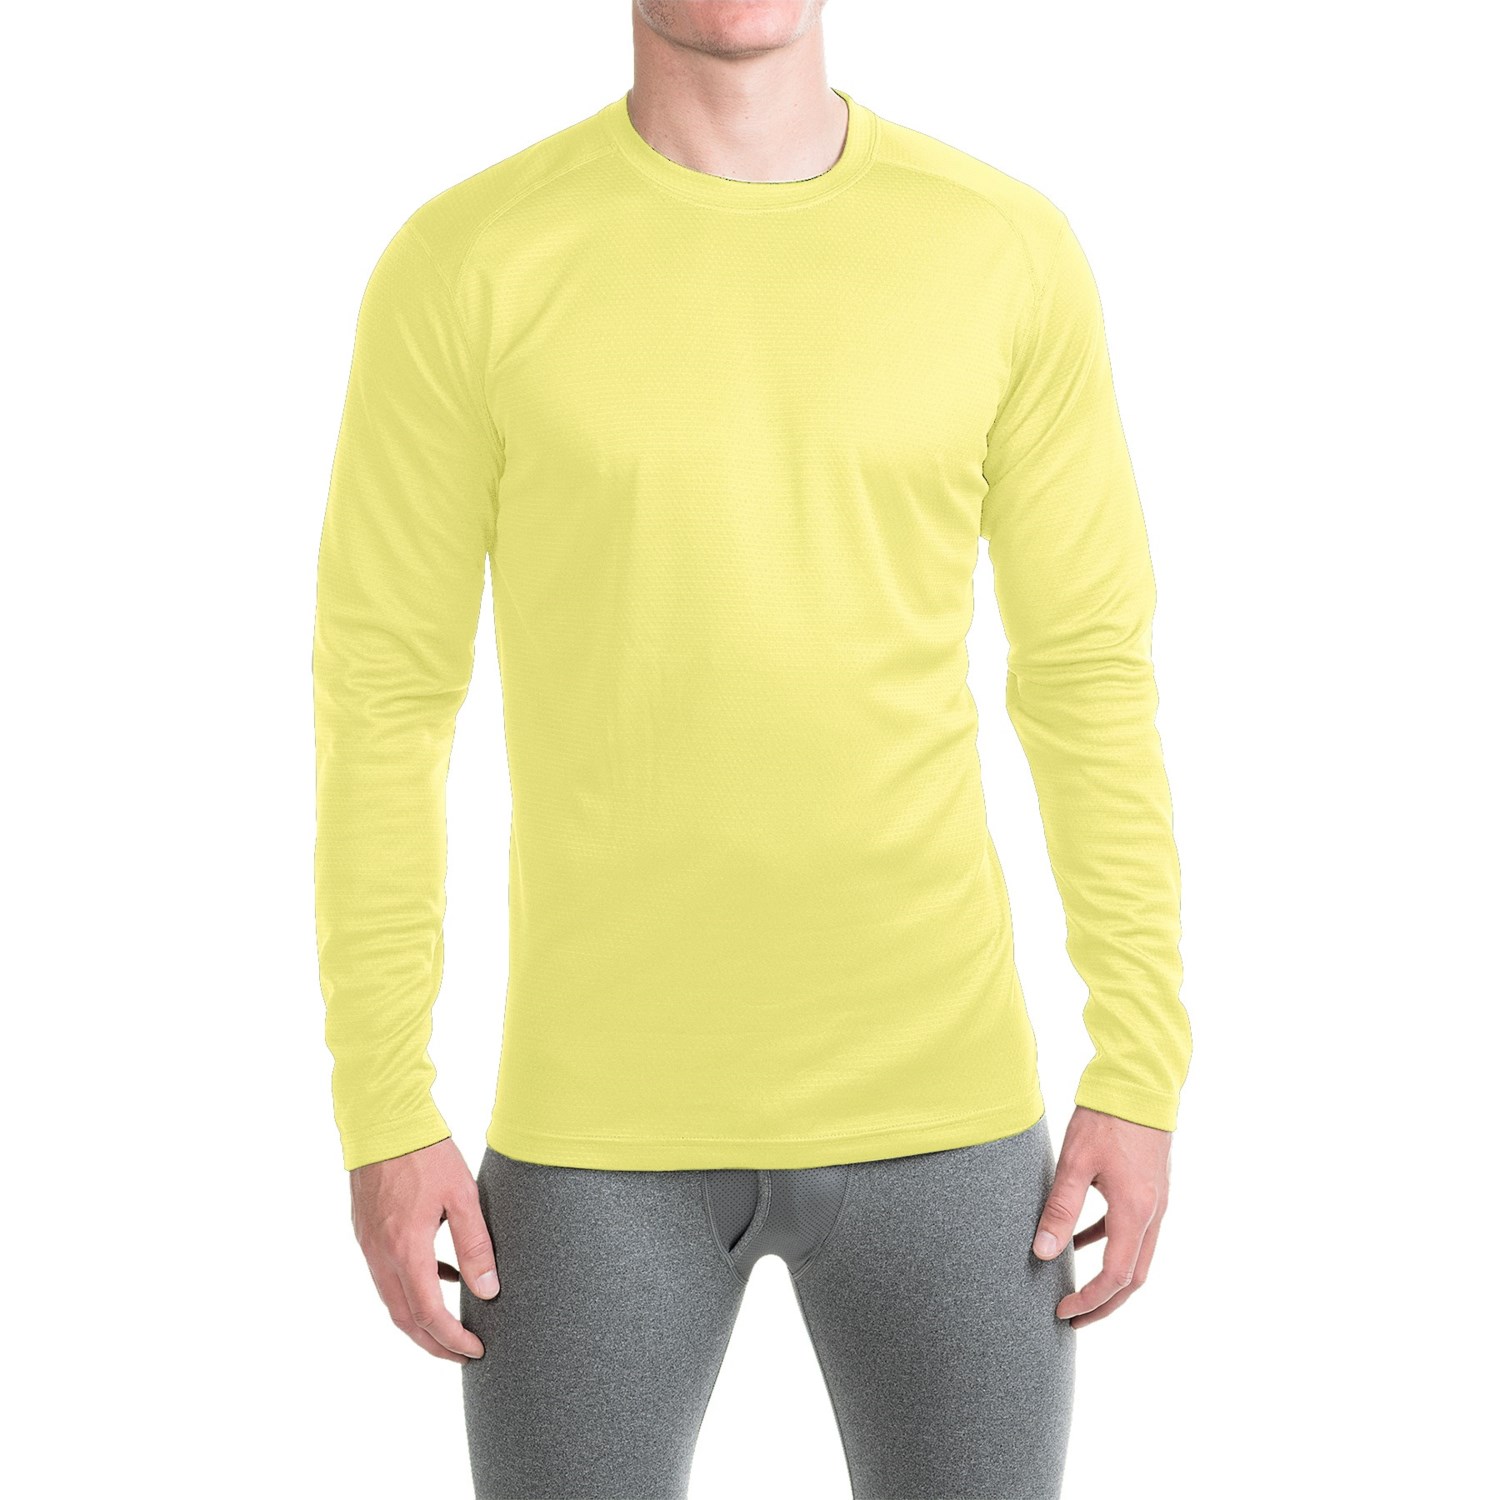 Terramar Helix T-Shirt (For Men) - Save 40%